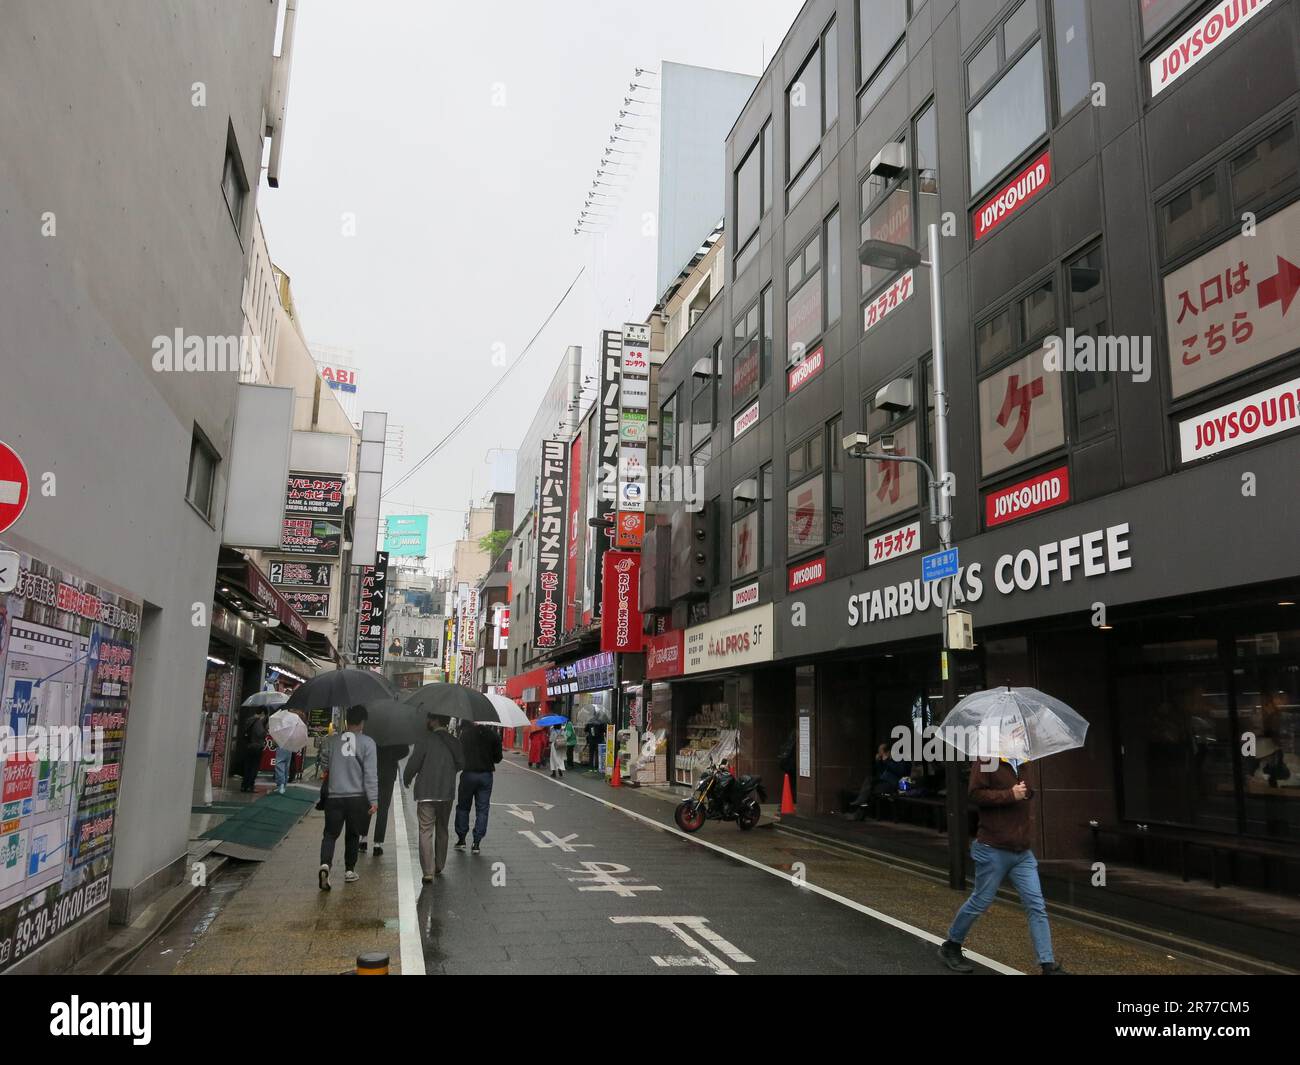 Le quartier occidental autour de la gare la plus animée du Japon, Shinjuku, regorge de rues animées avec des restaurants et des boutiques, dont Starbucks Coffee. Banque D'Images